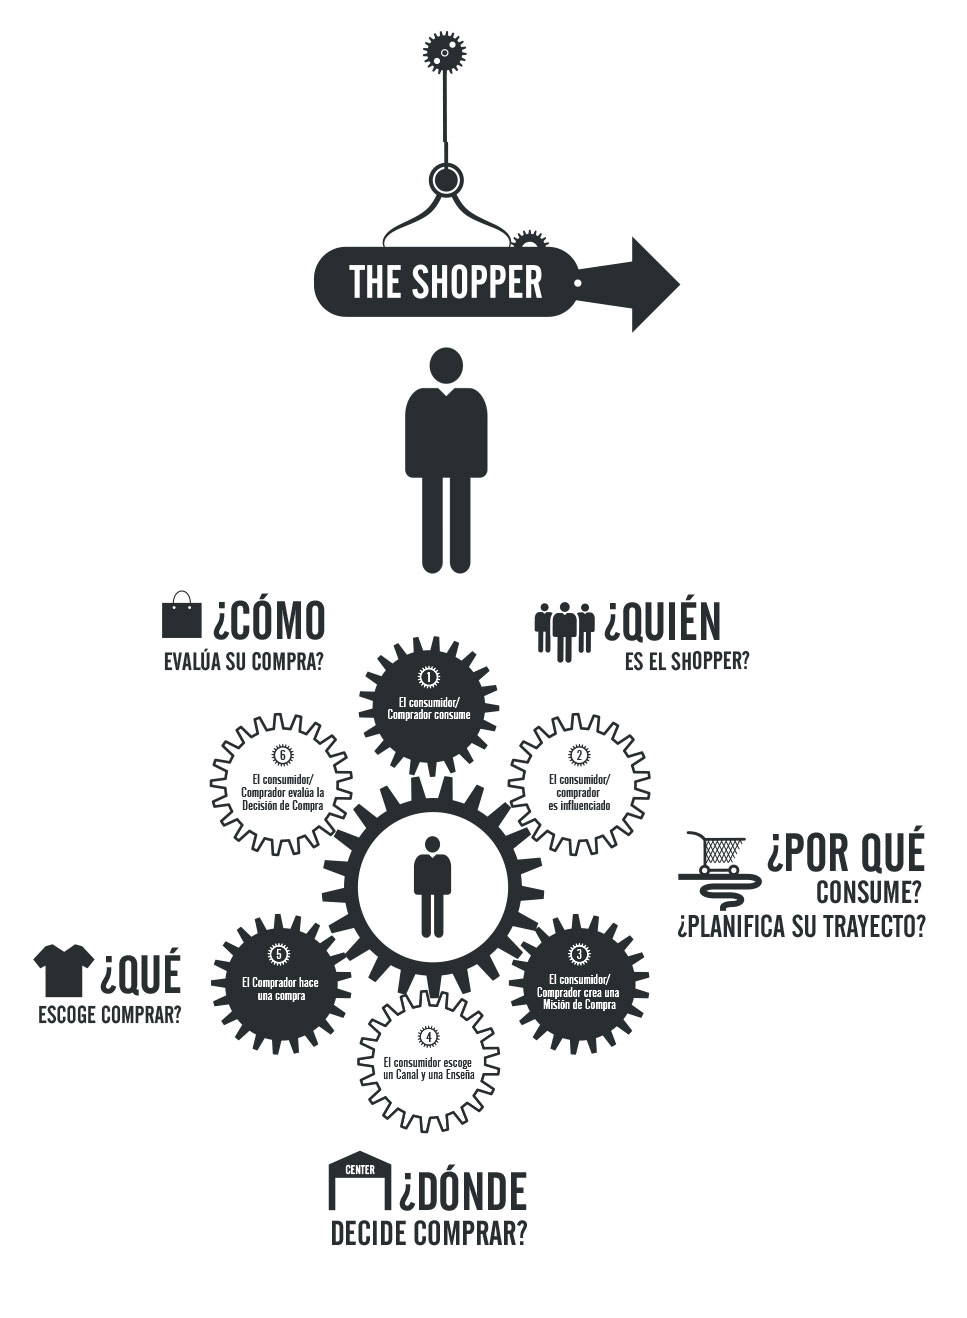 innovacion-gran-consumo-infografia-del-shopper